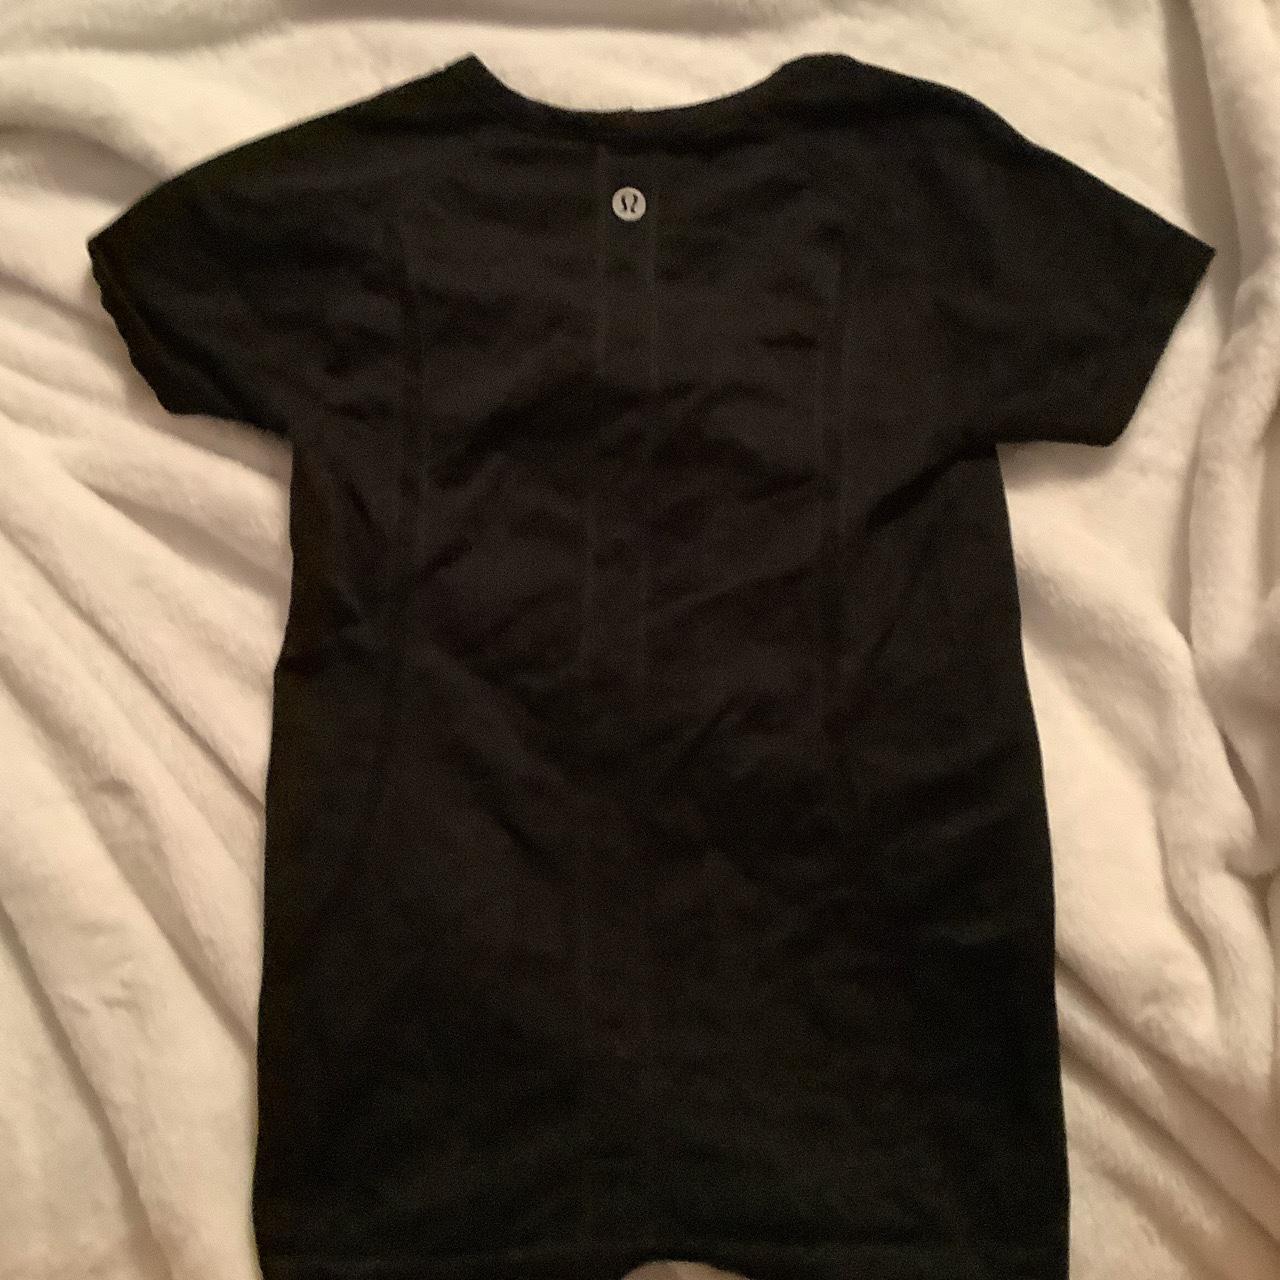 Lululemon Women's Black Shirt (2)